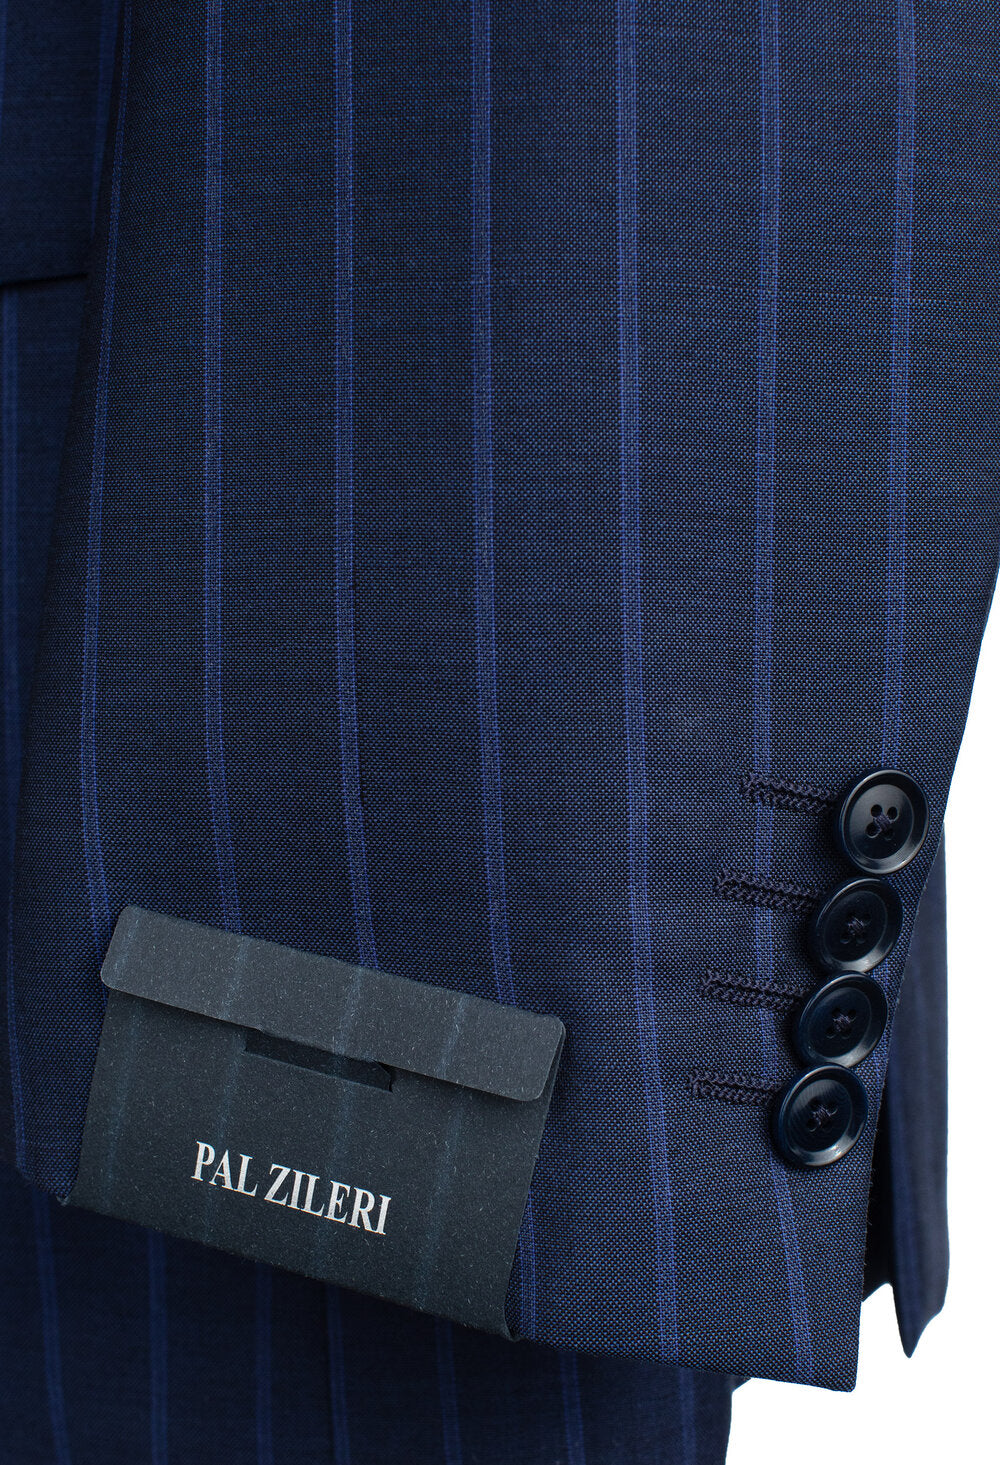 Pal Zileri Model Z Super 130 Suit in Blue Pinstripe